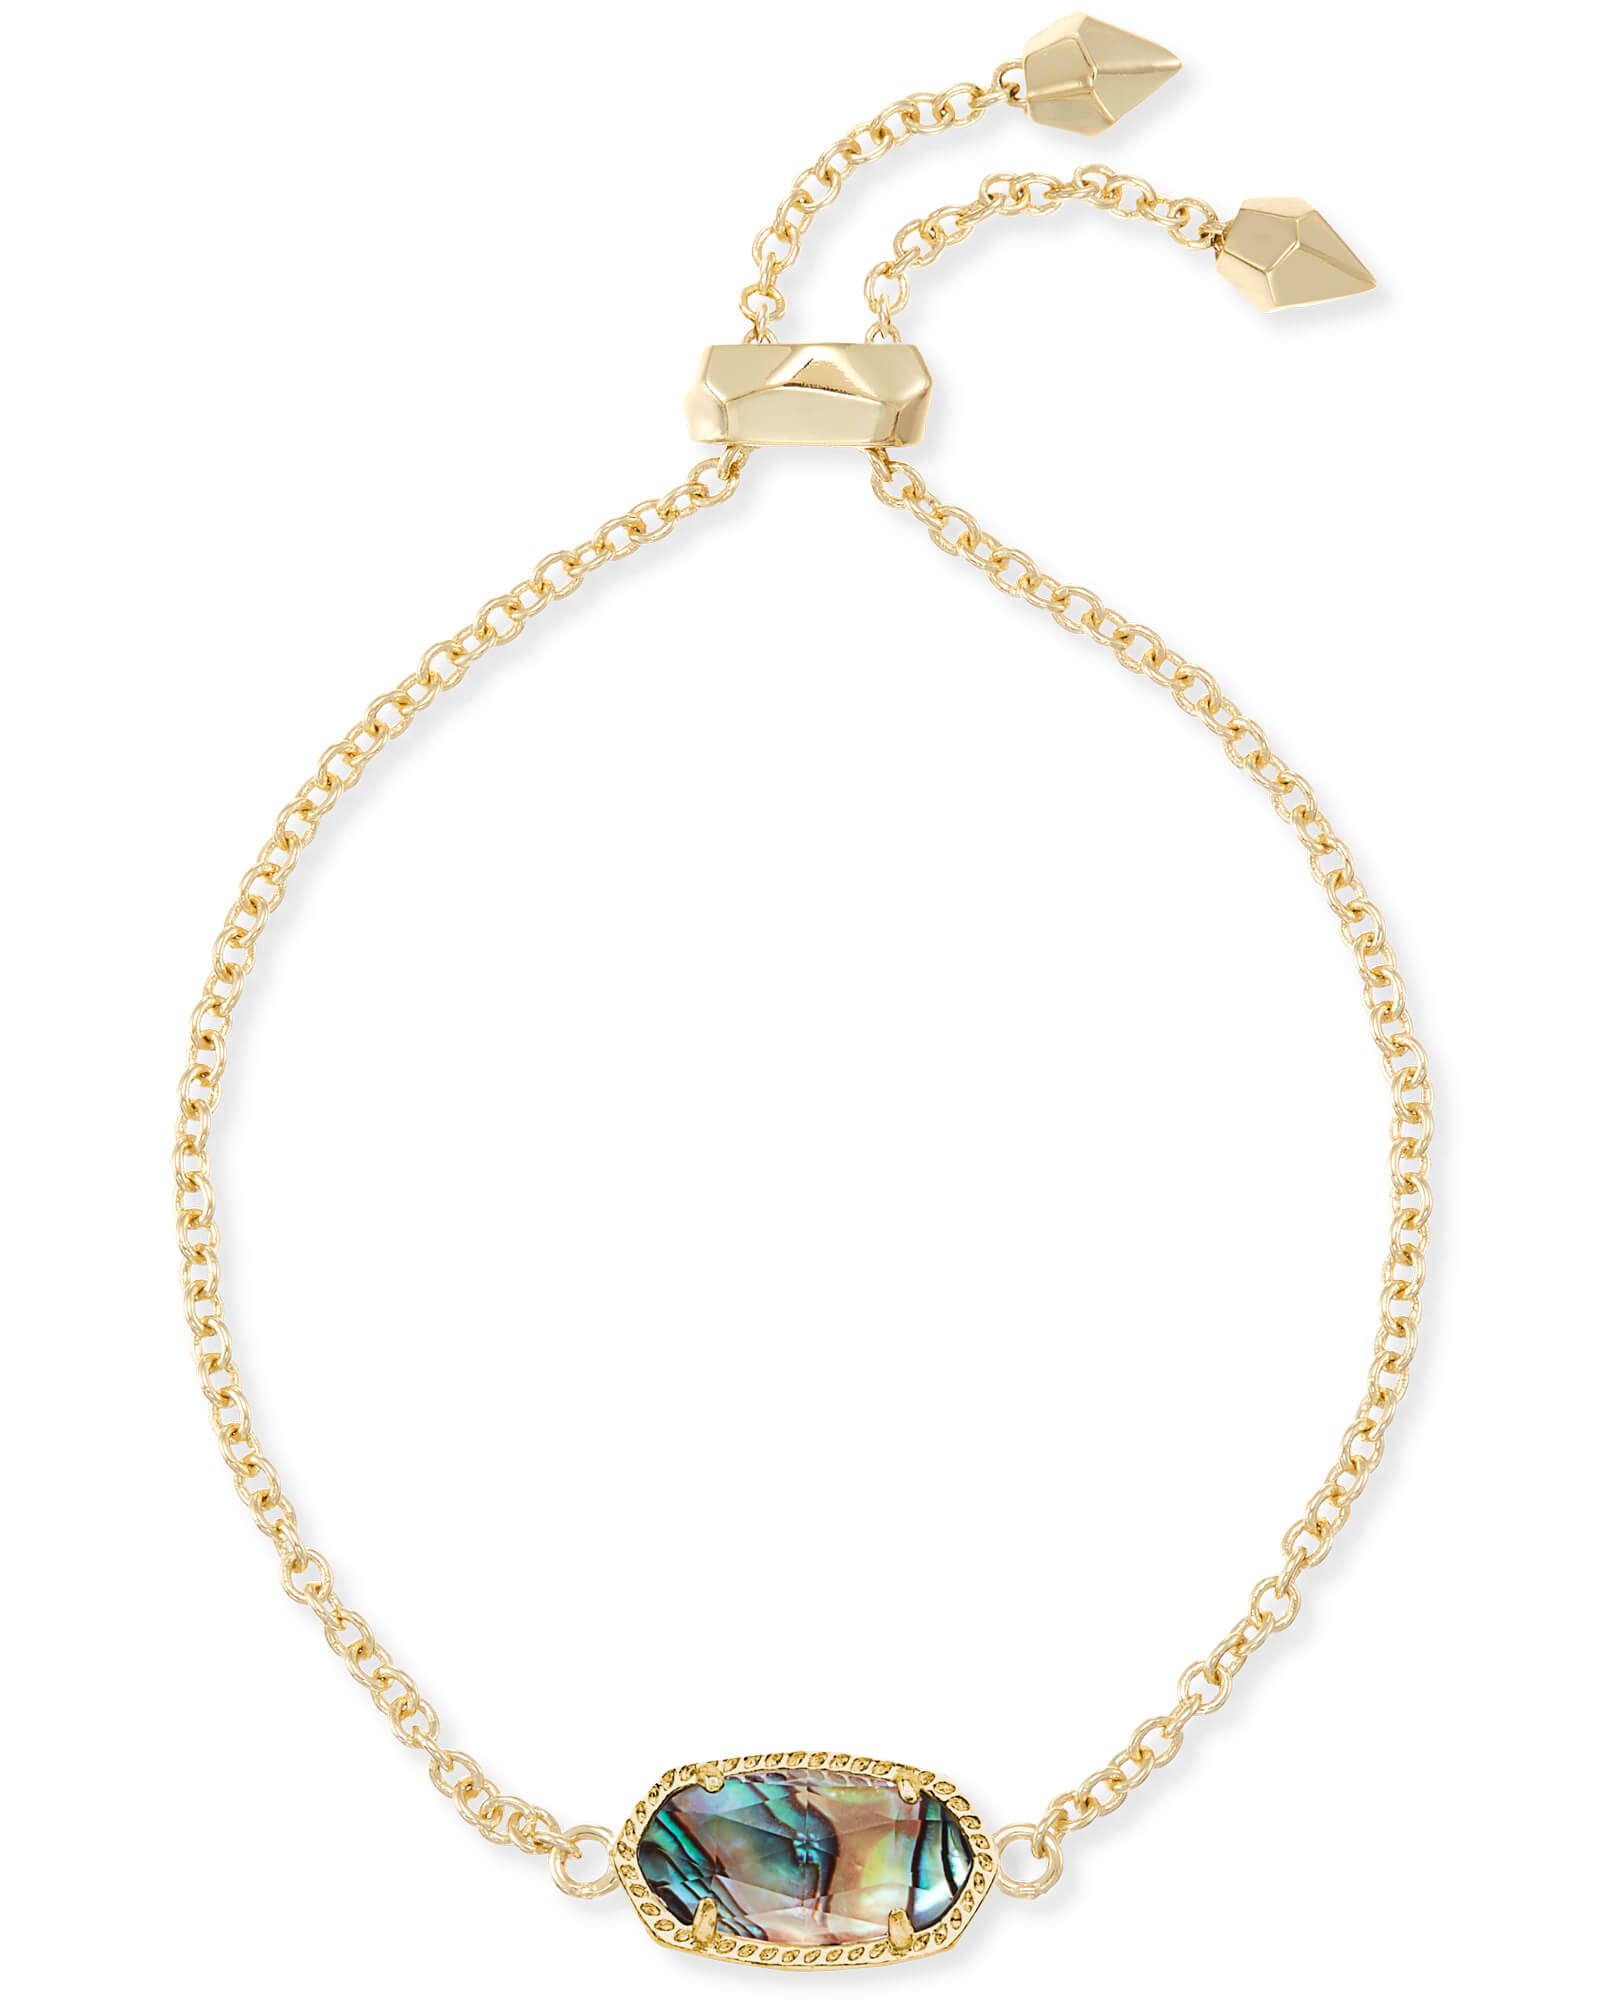 Elaina Gold Chain Bracelet in Abalone Shell | Kendra Scott